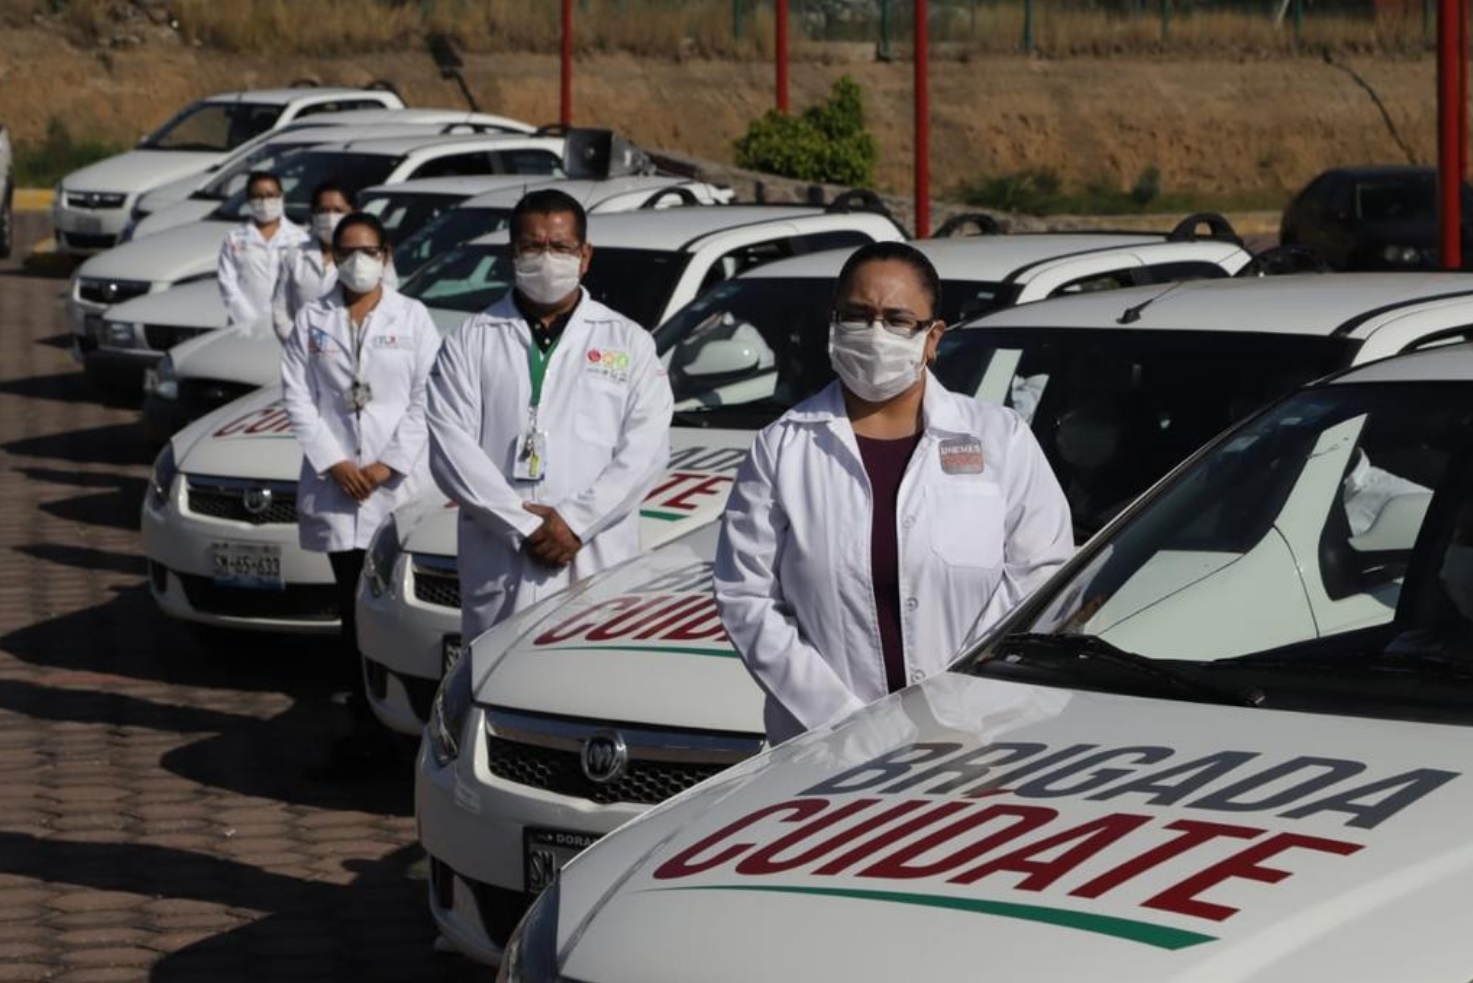 35 brigadas “Cuídate” recorren municipios de Tlaxcala para prevenir Covid-19 en enfermos crónicos: Marco Mena.